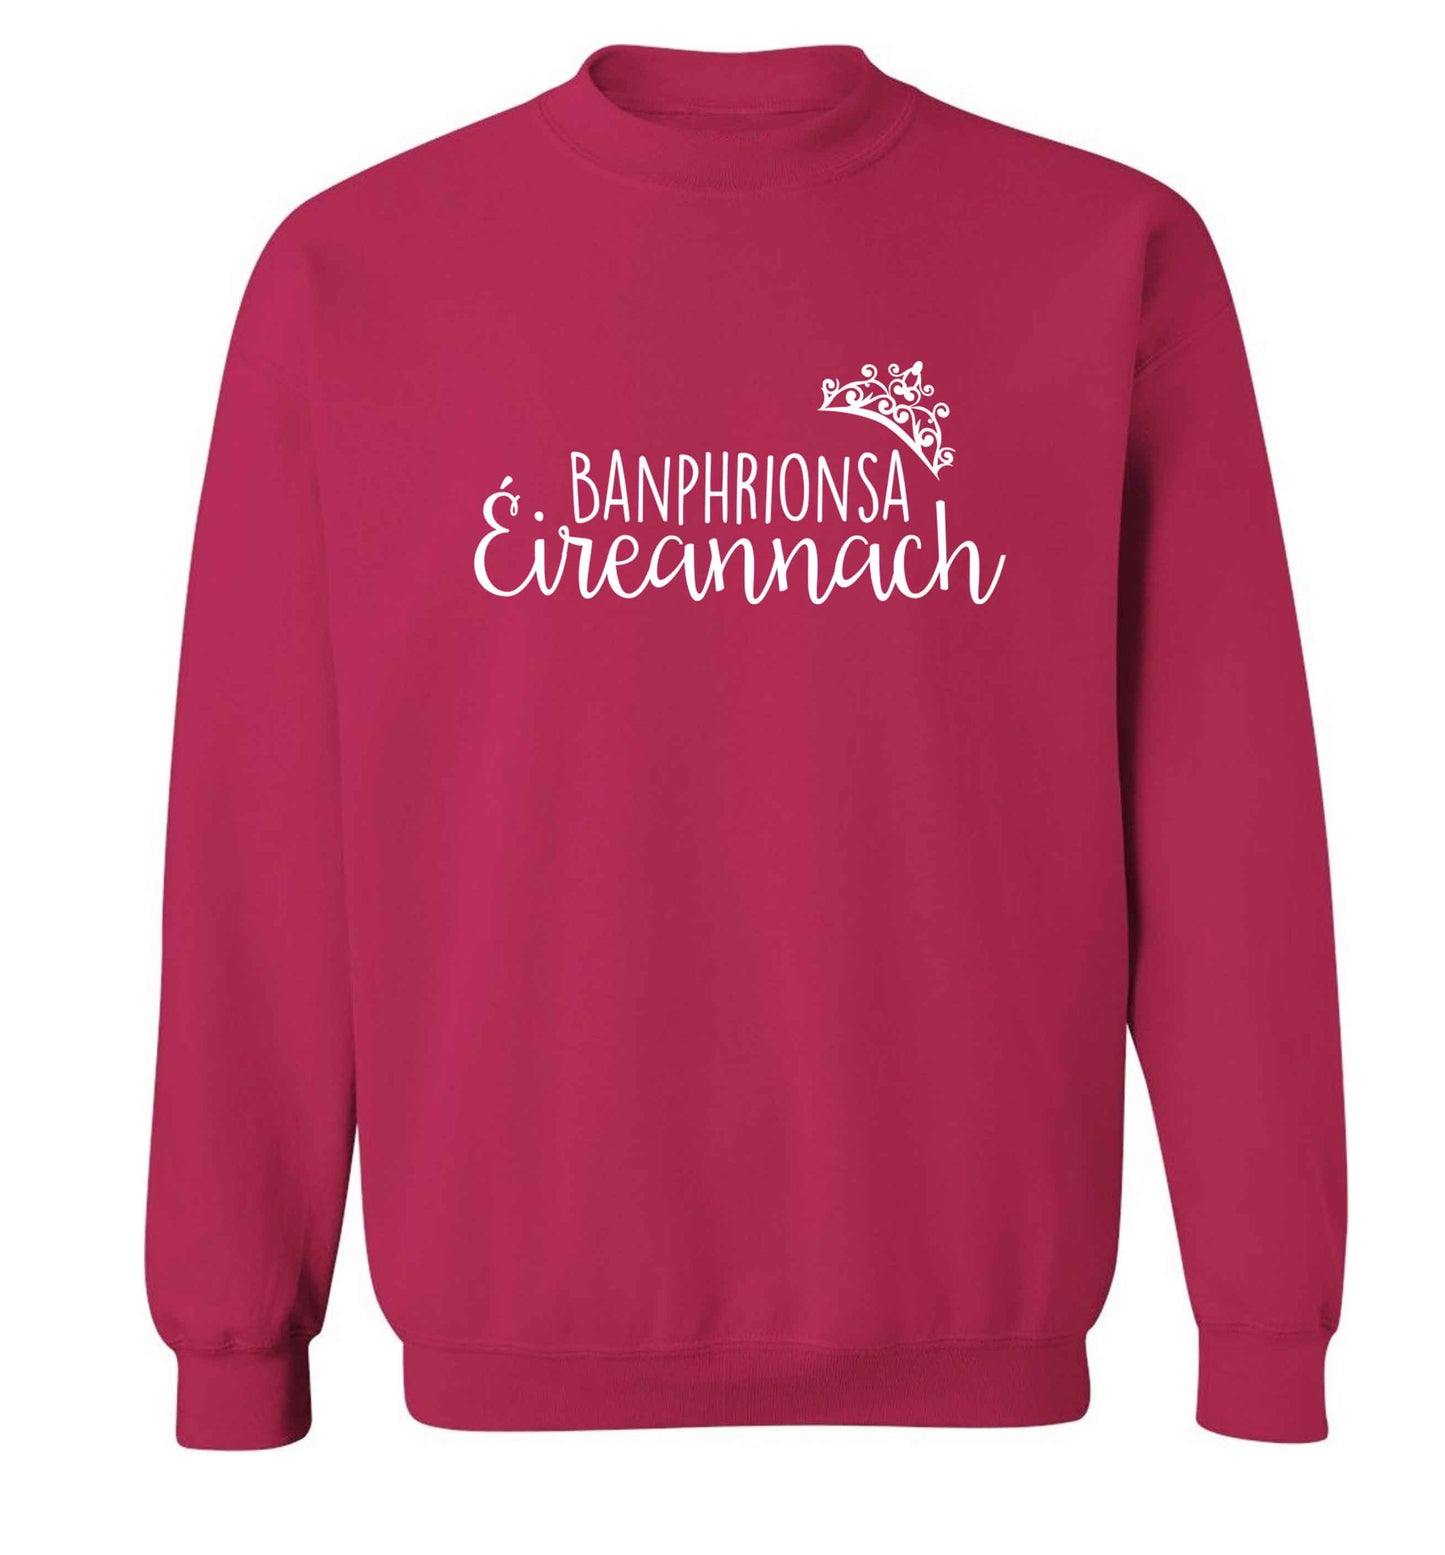 Banphrionsa eireannach adult's unisex pink sweater 2XL